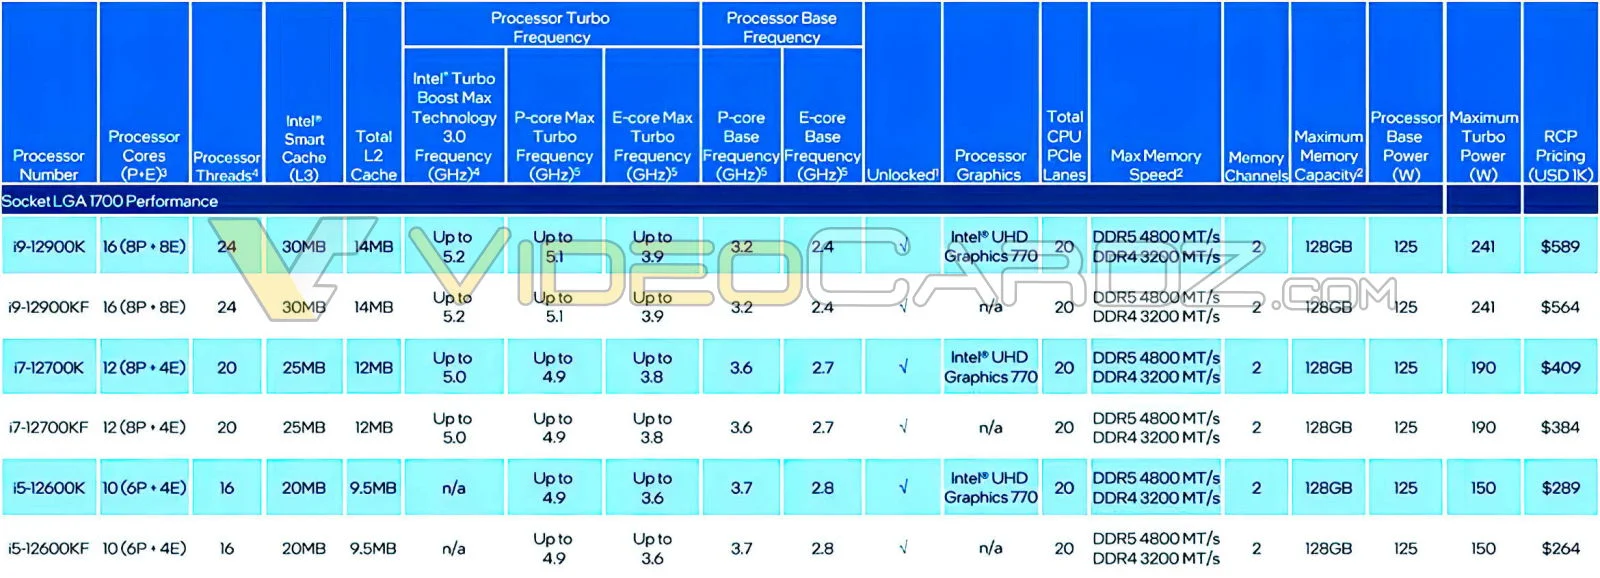 Цены и характеристики процессоров Intel Alder Lake утекли в сеть до анонса - фото 1